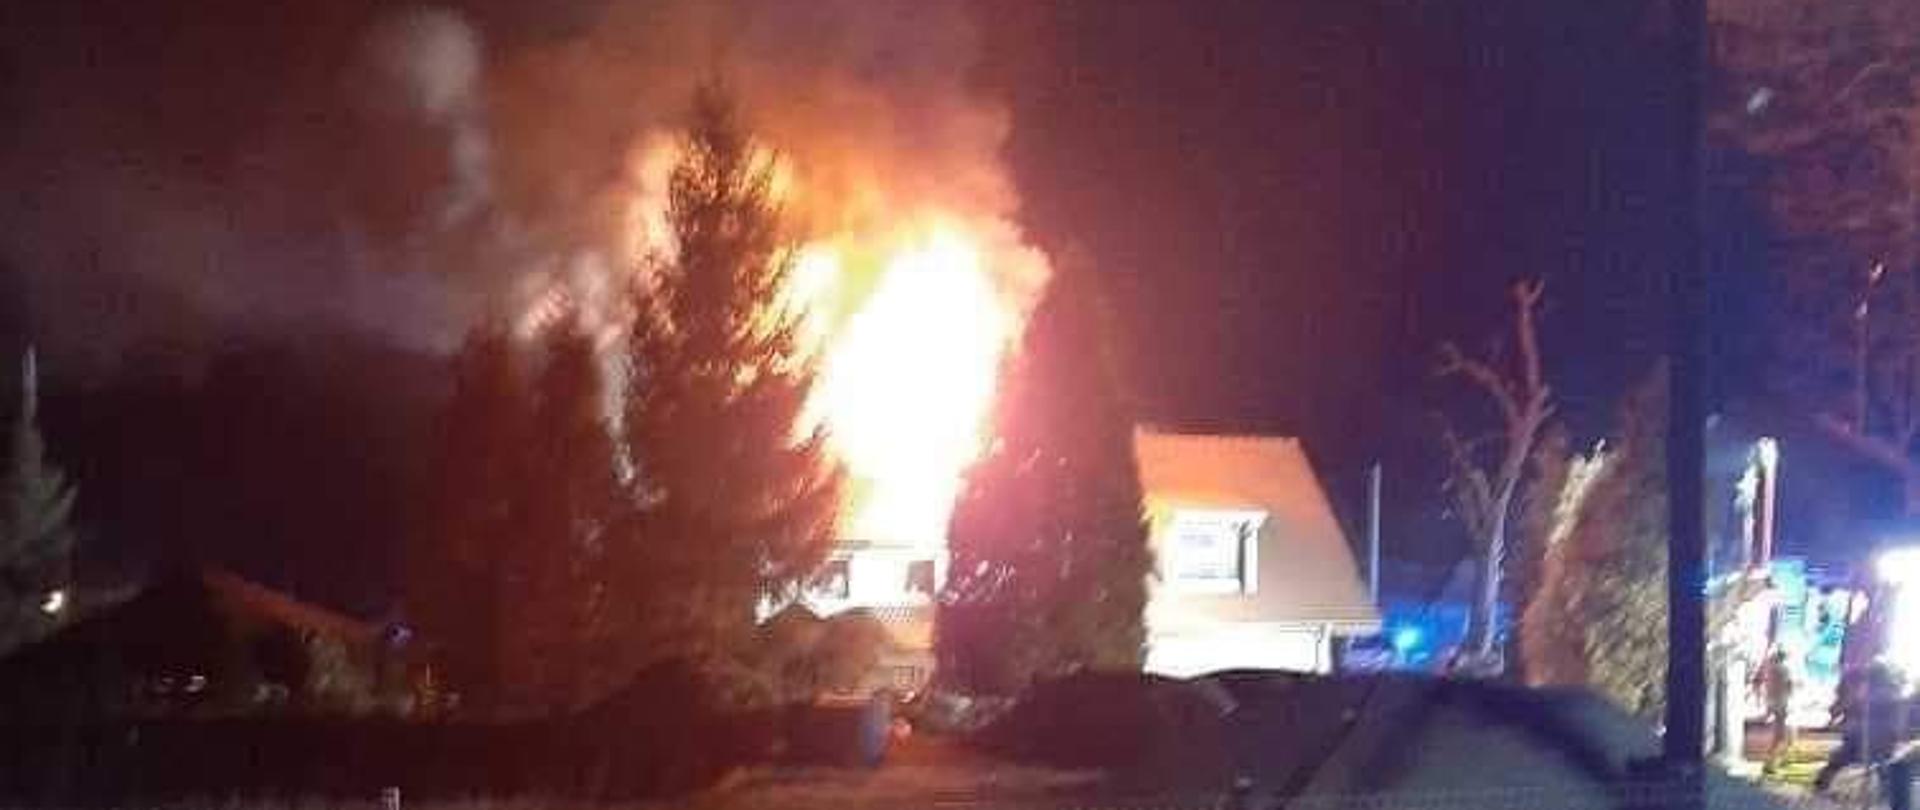 Obraz przedstawia płonący budynek mieszkalny. Płomienie wychodzą ponad dach budynku. Pora nocna.